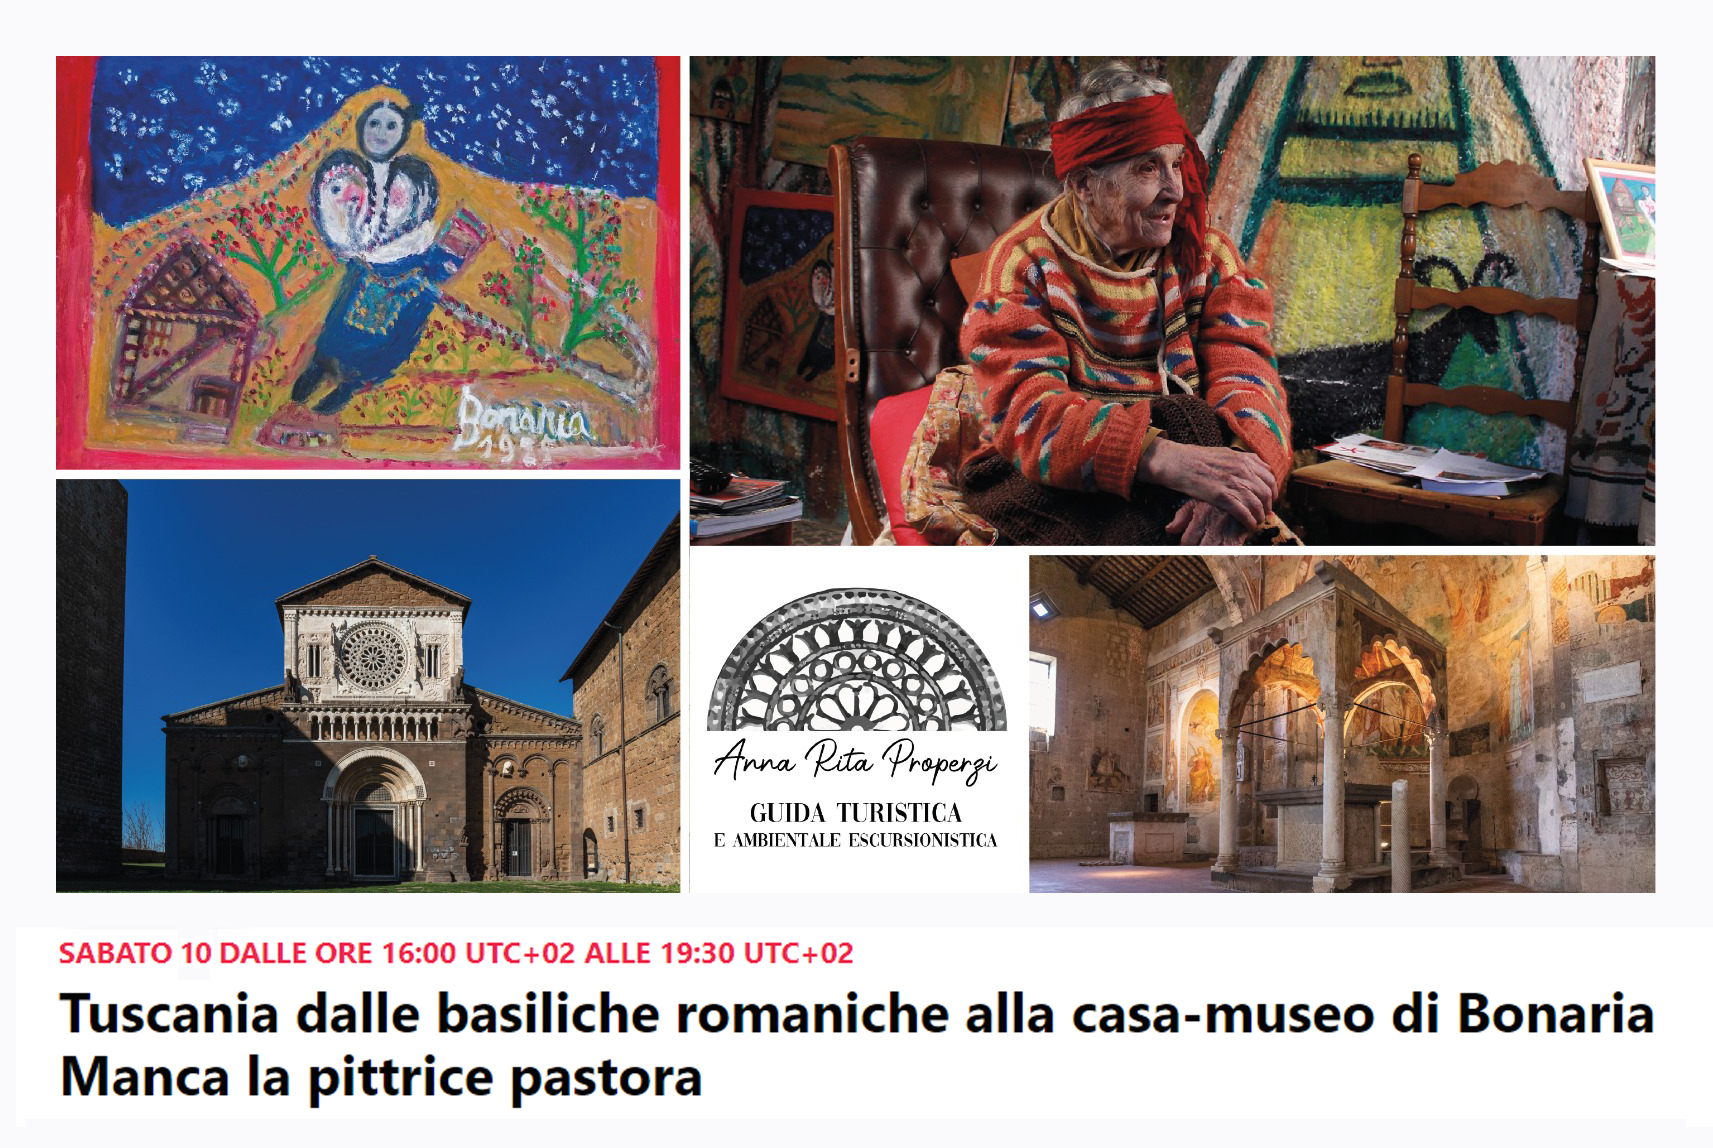  Evento sabato 10 luglio dalle Basiliche Romaniche di S. Pietro e S. Maria Maggiore a Tuscania, alla Casa Museo di Bonaria Manca la pittrice pastora, due scrigni di simboli, per ricordare l'artista nel giorno in cui à nata.